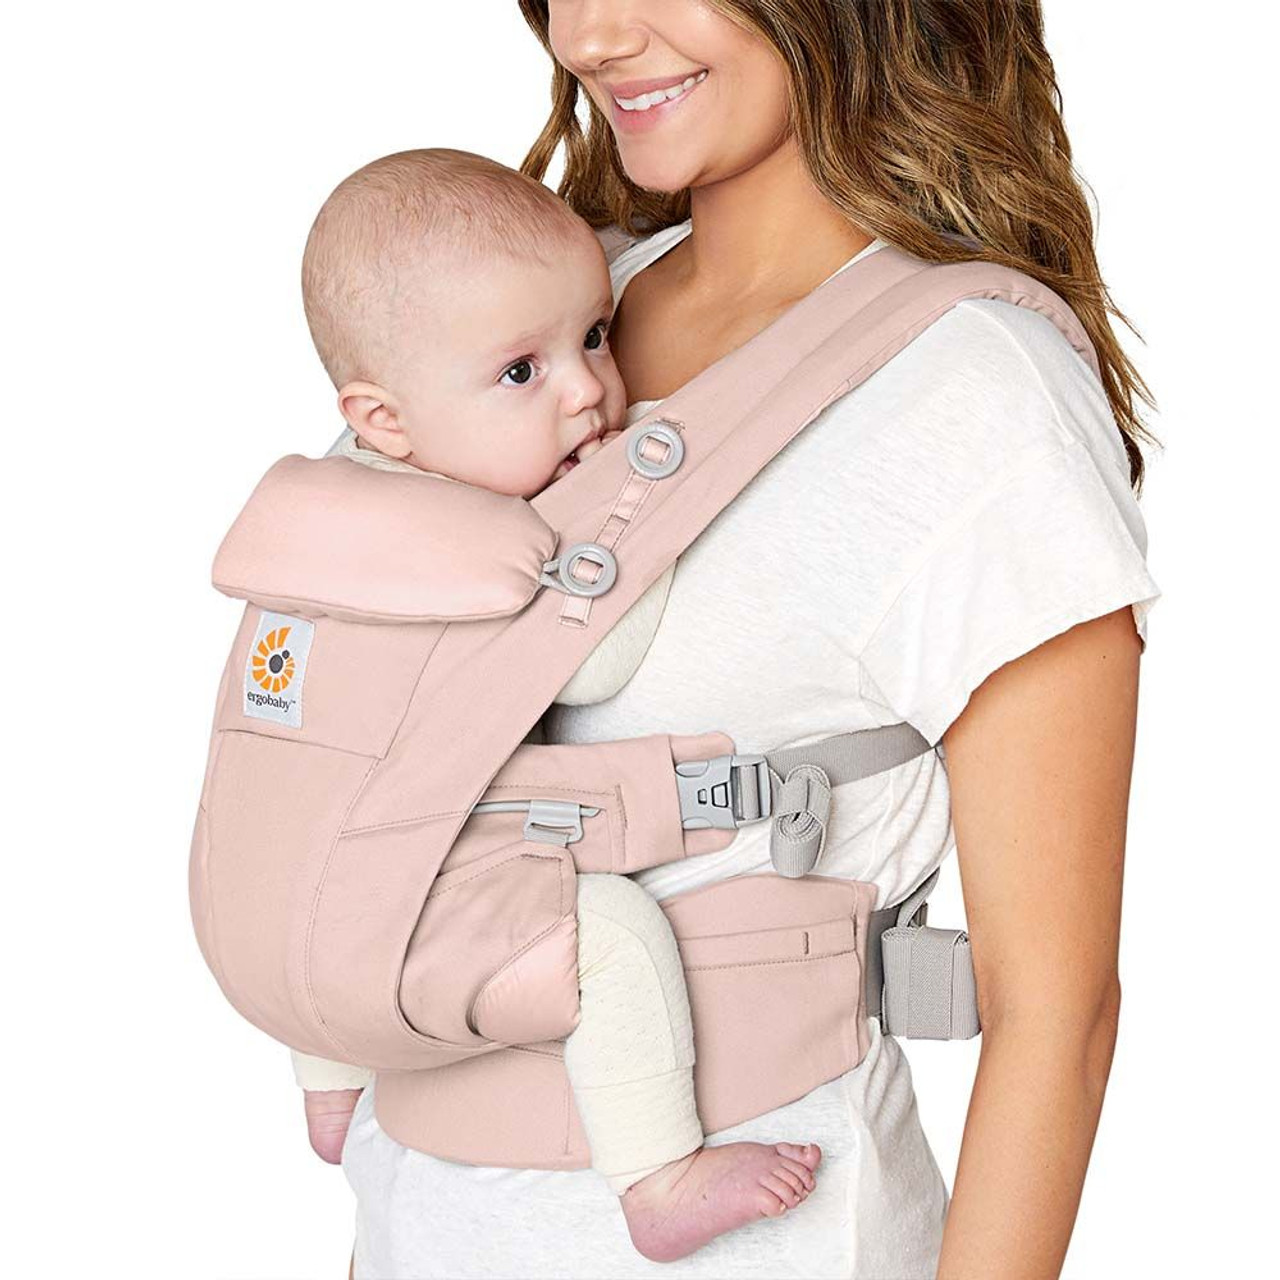 Omni Breeze Baby Carrier Pink Quartz Ergobaby - Babyshop